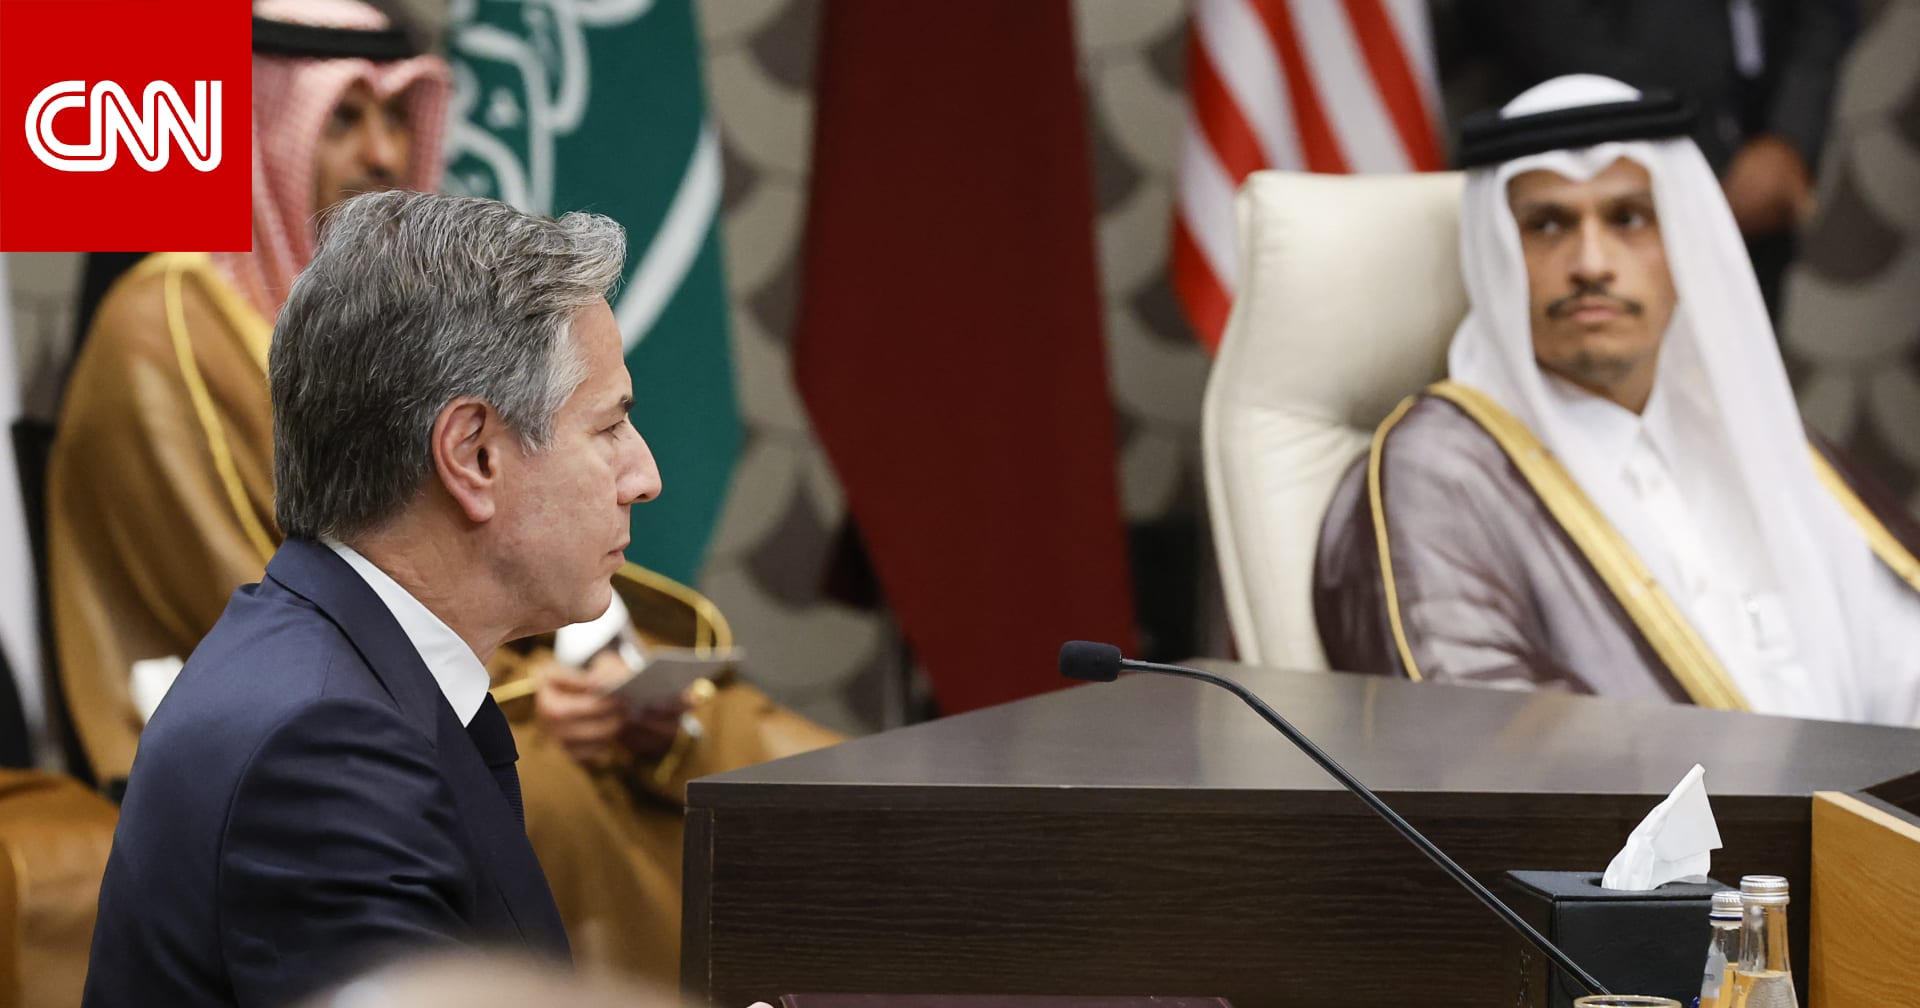 مصدر مطلع: رئيس وزراء قطر قال لبلينكن إن مفاوضات الرهائن في اتجاه إيجابي لكن الوضع متغير